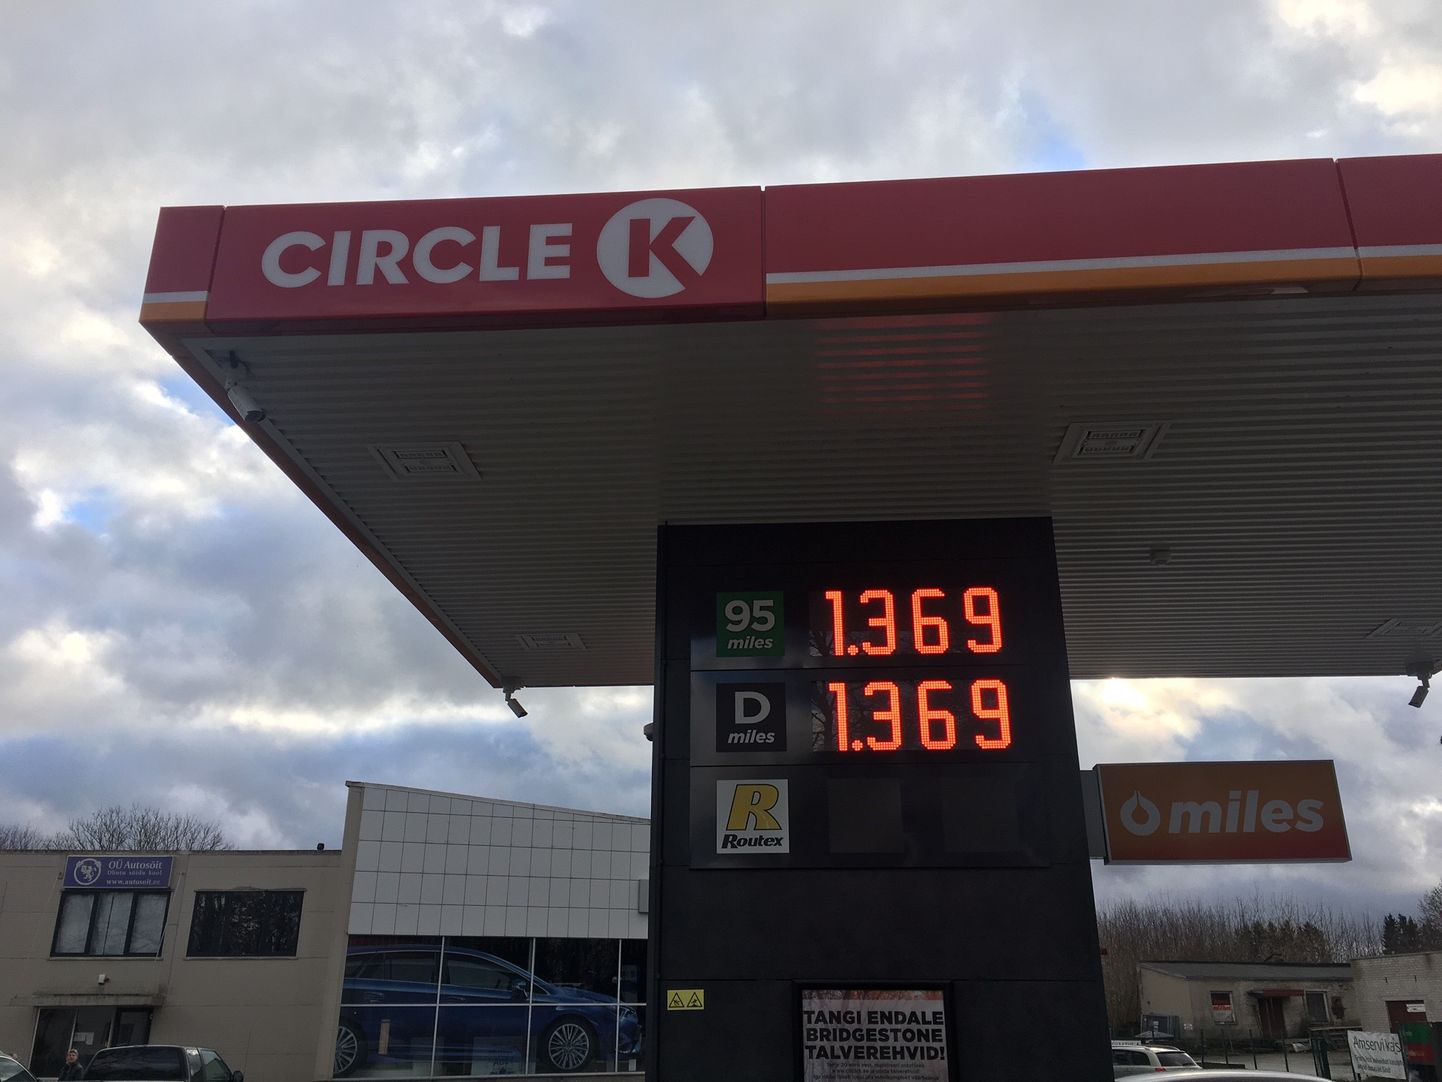 Стоимость сегодня, 3 ноября 2018, топлива на Circle K.